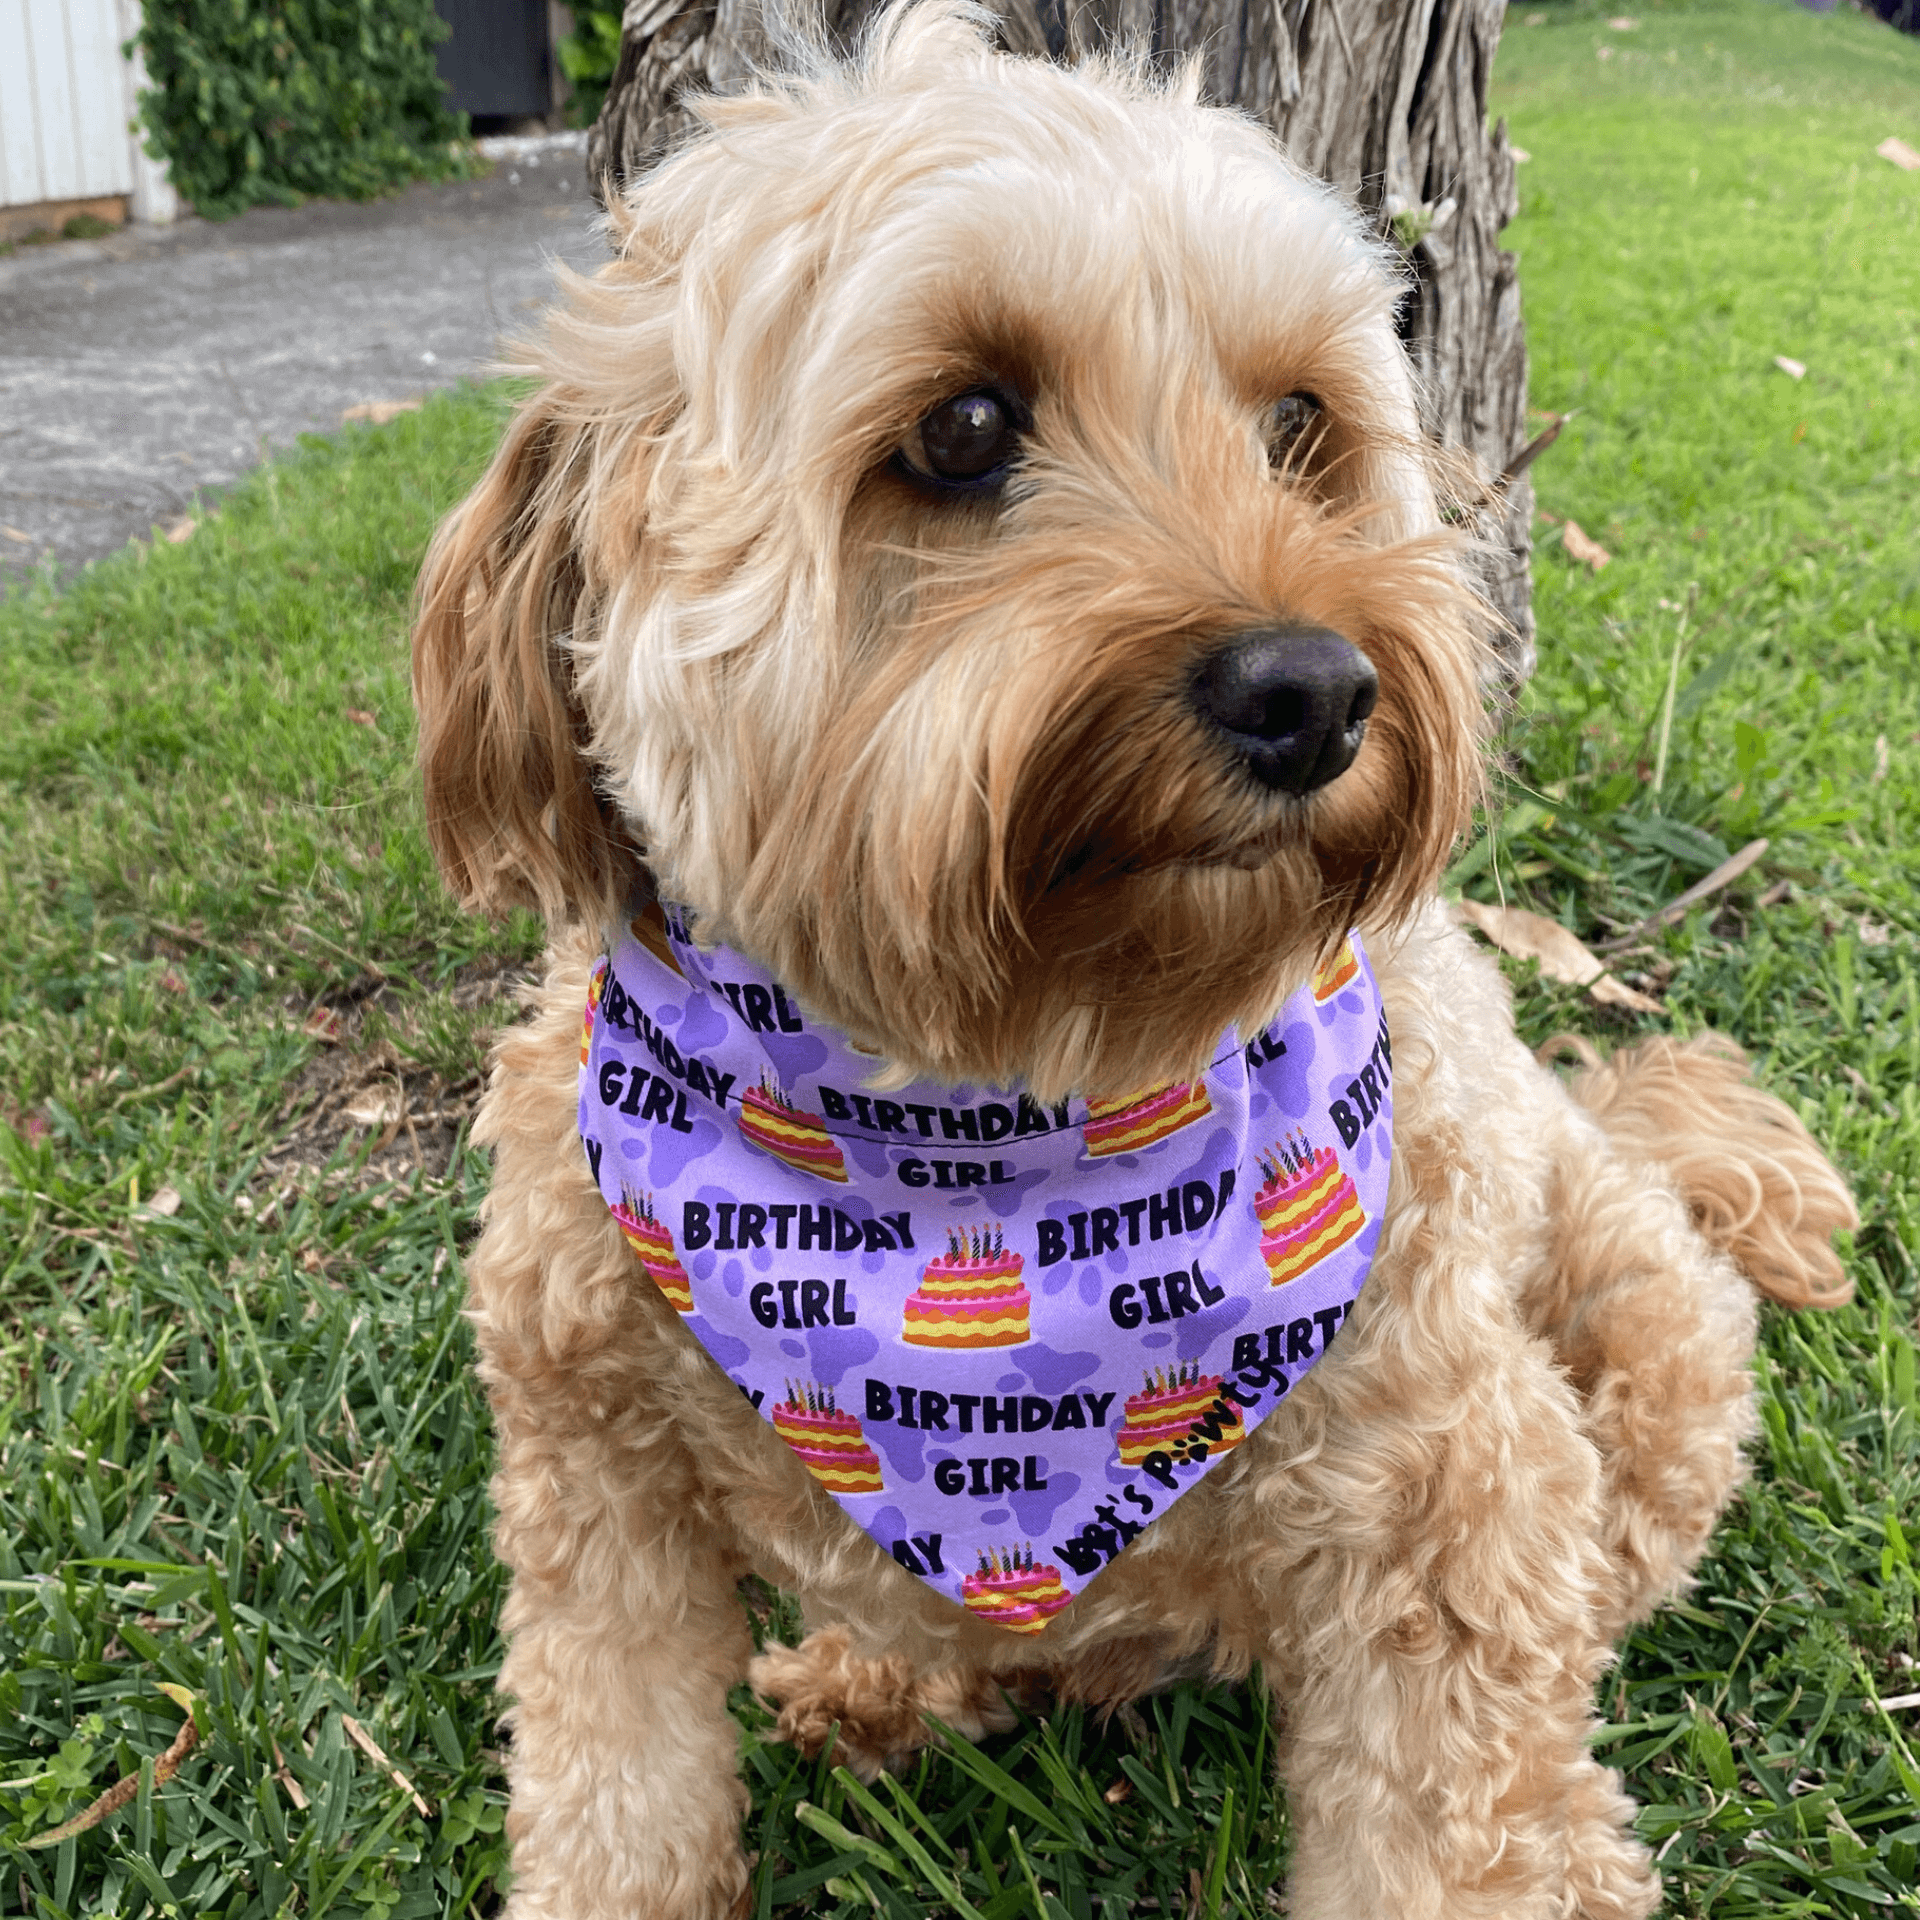 Reversible dog bandana, Let's pawty dog fashion